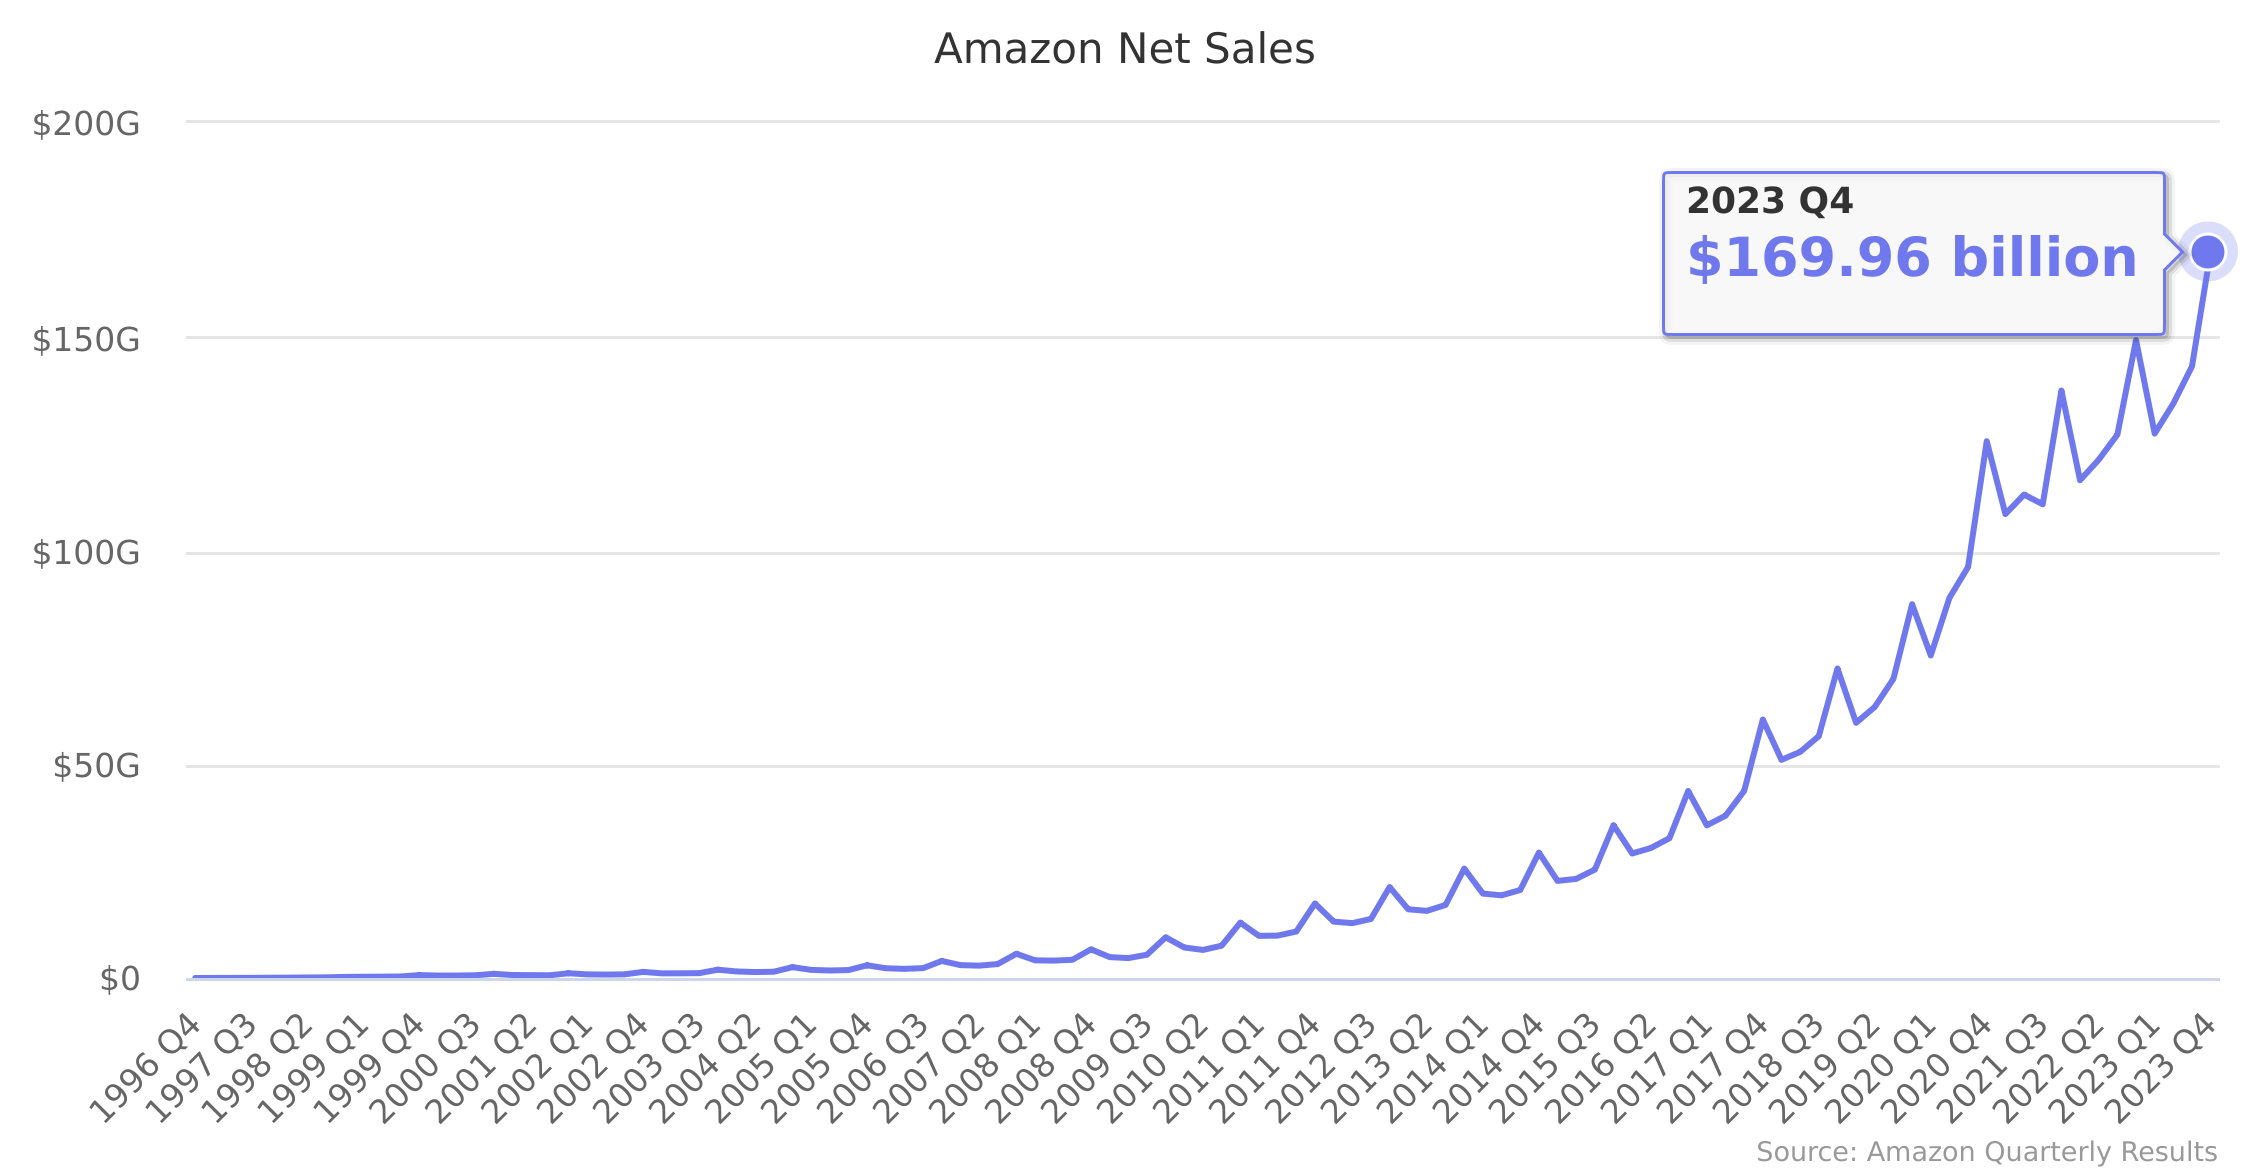 Amazon Net Sales 1996-2023